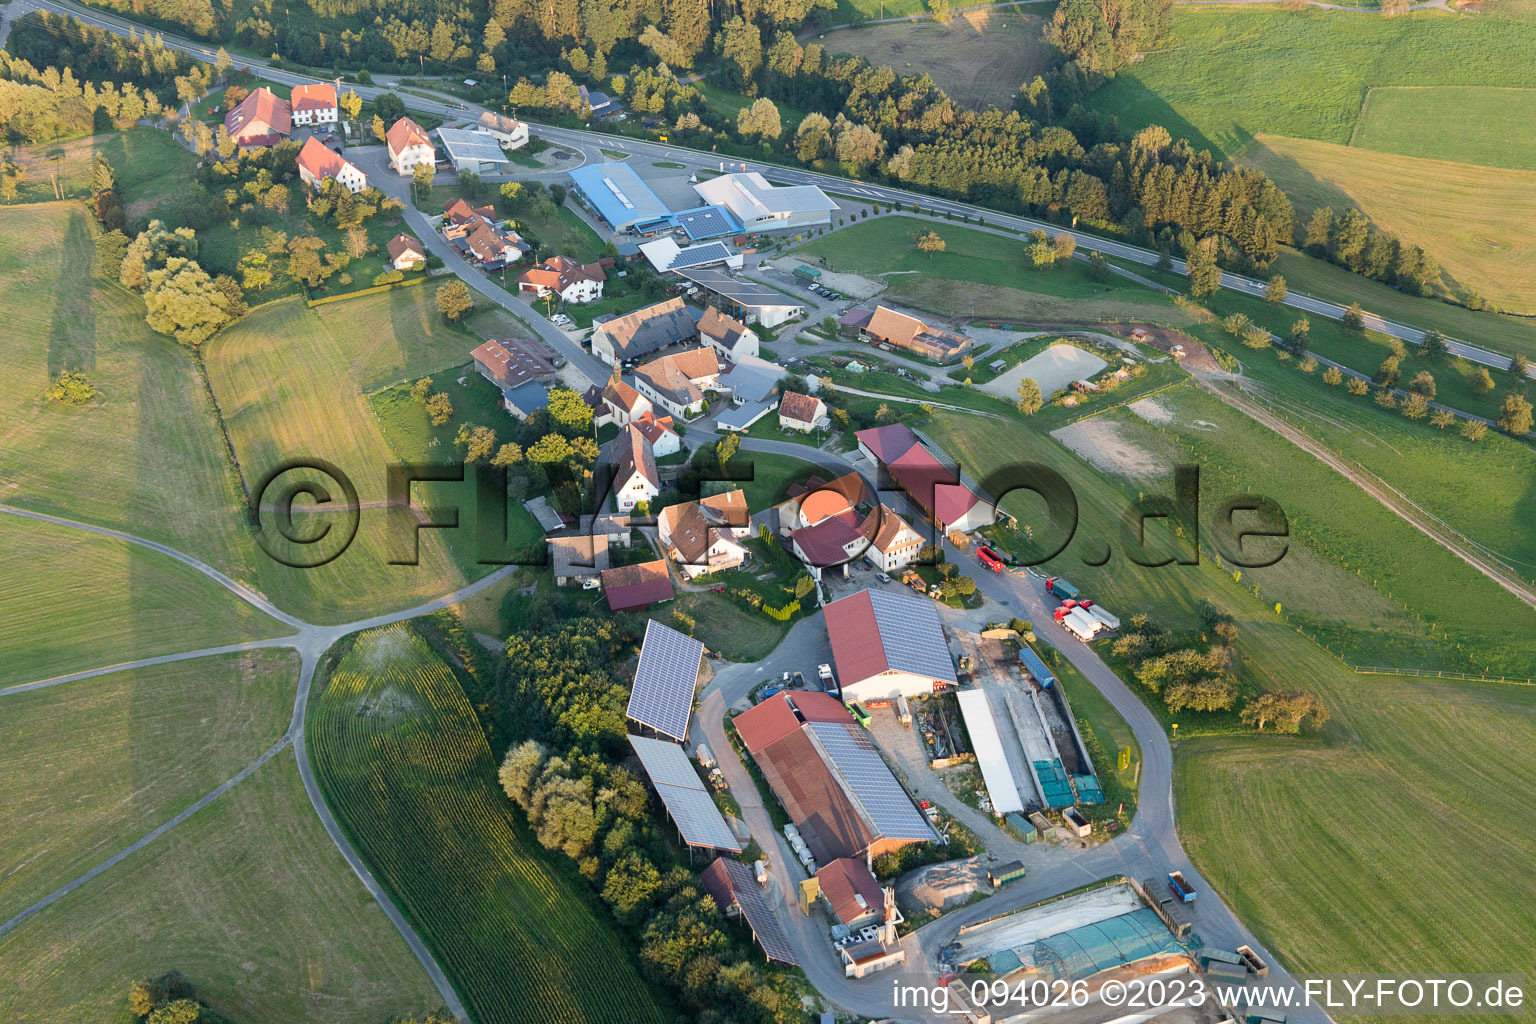 Vue aérienne de Propriété d'une ferme Mathäus Muffler Agriculture à Mühlingen dans le département Bade-Wurtemberg, Allemagne